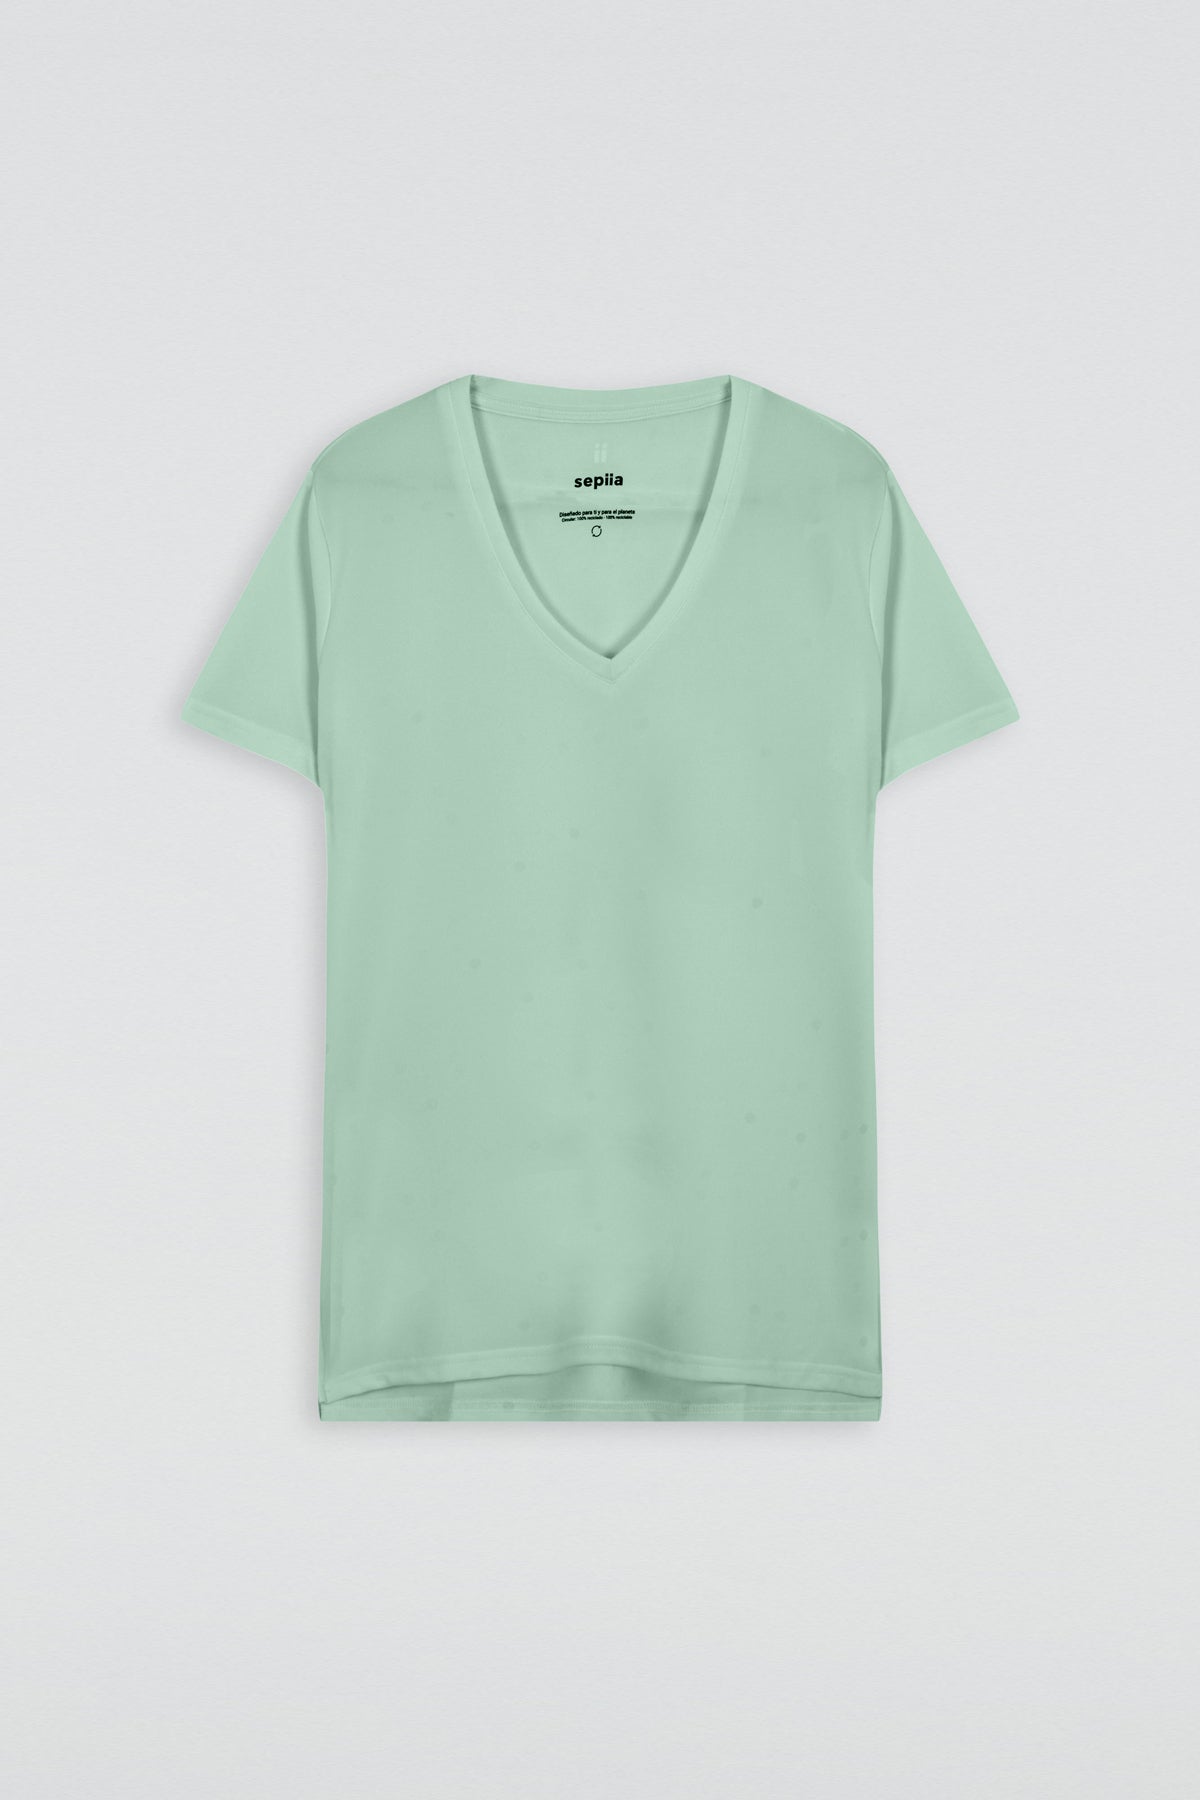 Jade green v-neck T-shirt